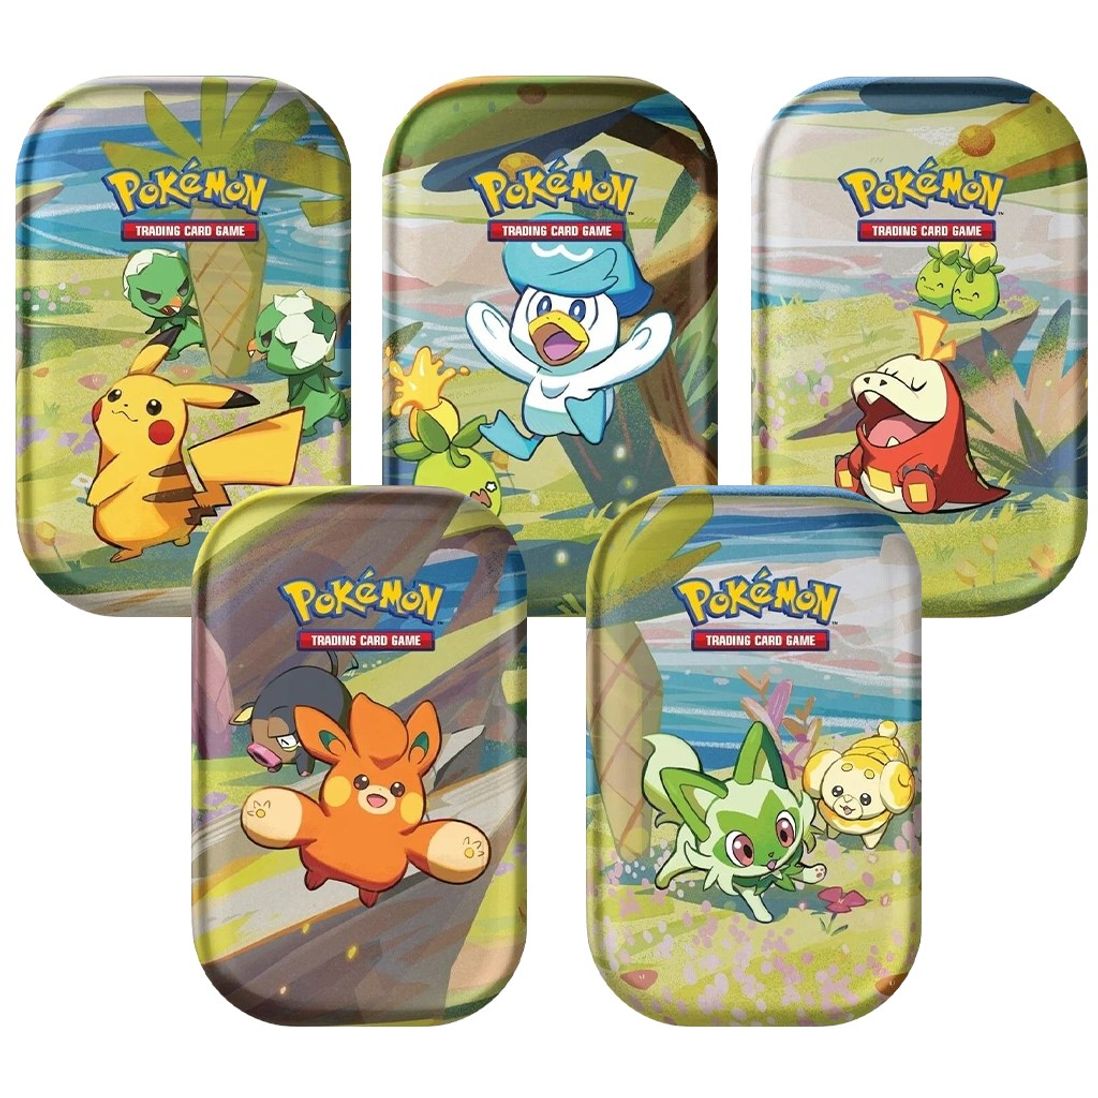 Pokémon TCG: Paldea Friends Mini Tin, Miscellaneous Cards & Products